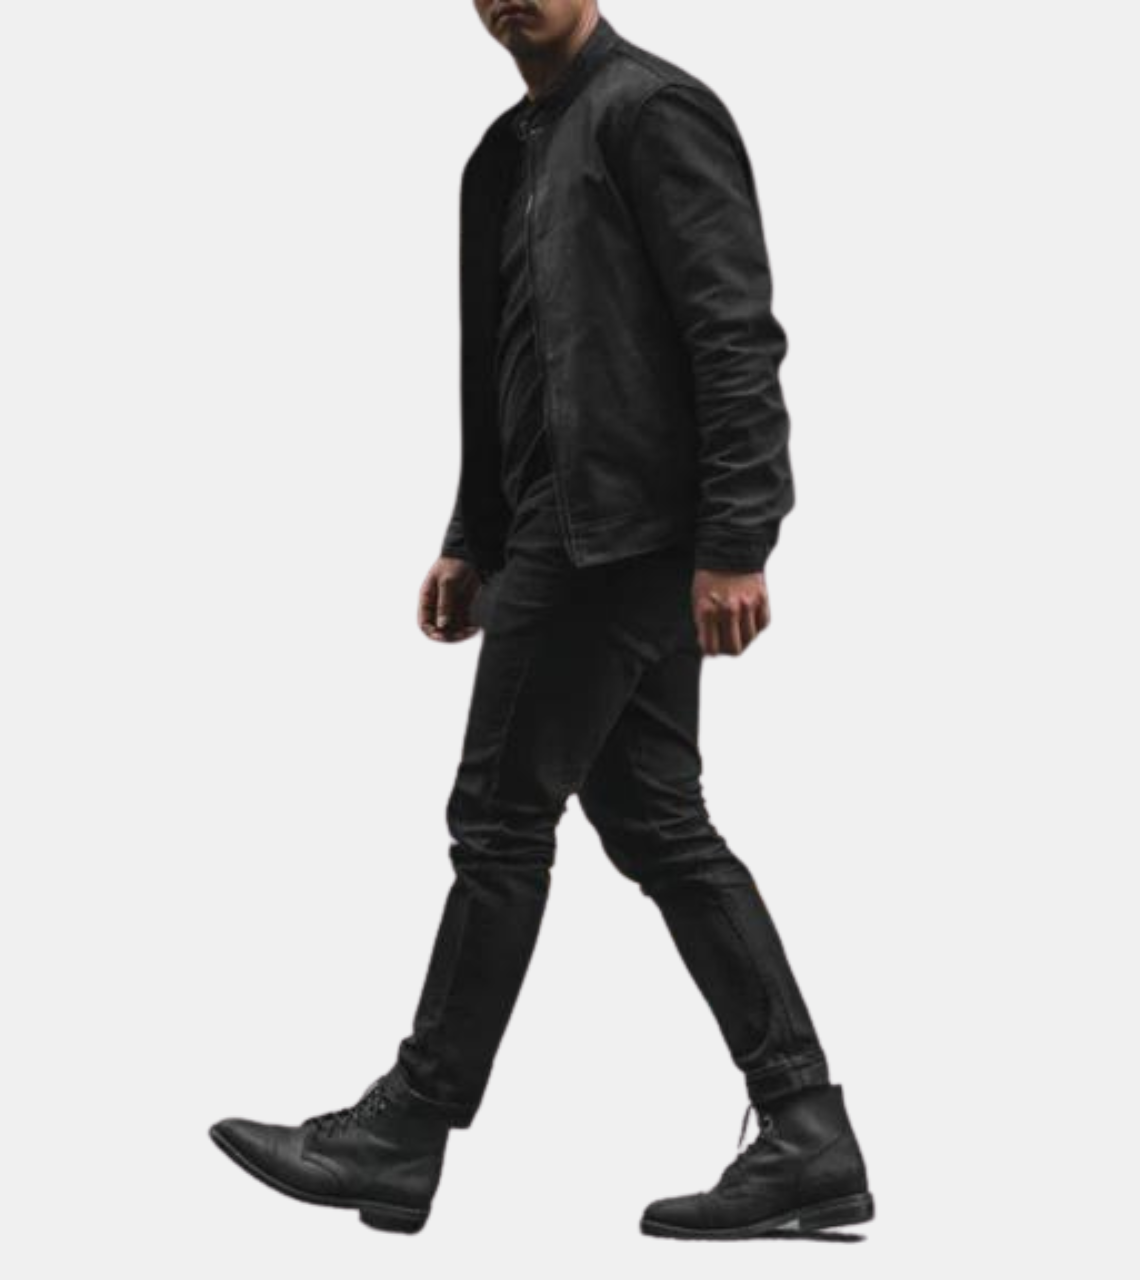 Kai Men's Black Leather Jacket